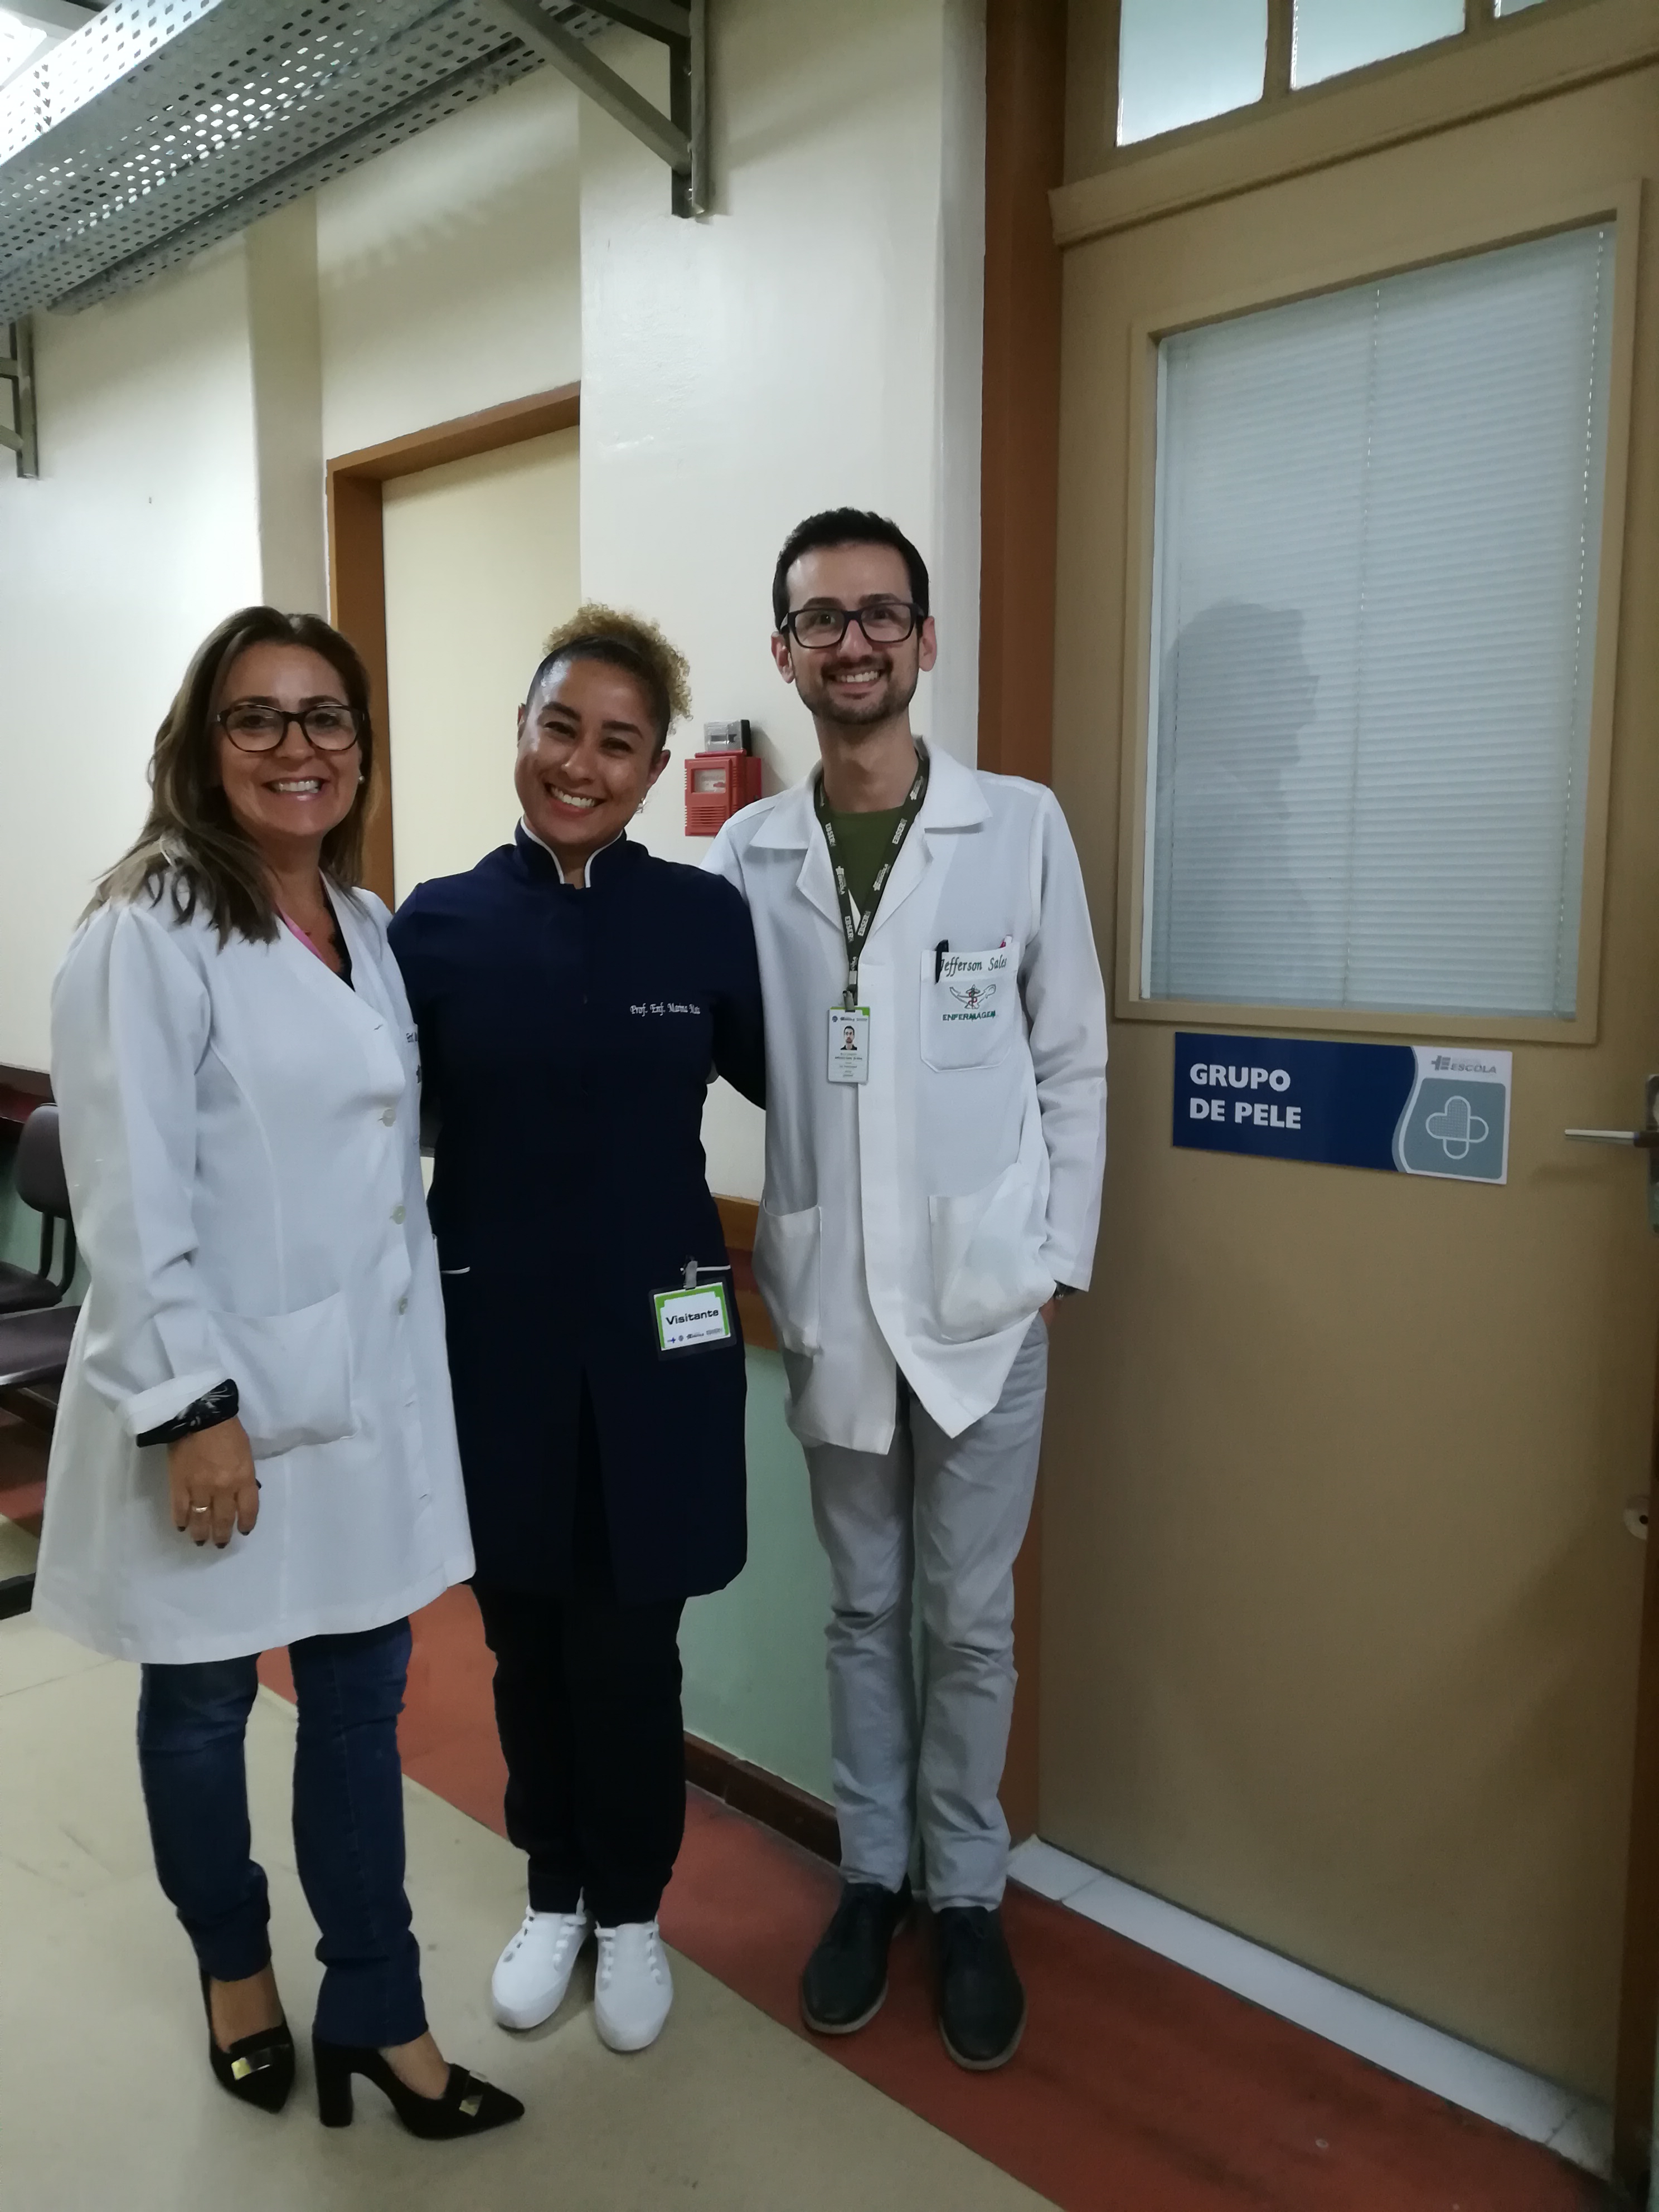 Na semana passada, a Professora Marina Soares Mota realizou visita técnica ao Grupo de Pele do Hospital Escola UFPel Ebserh.